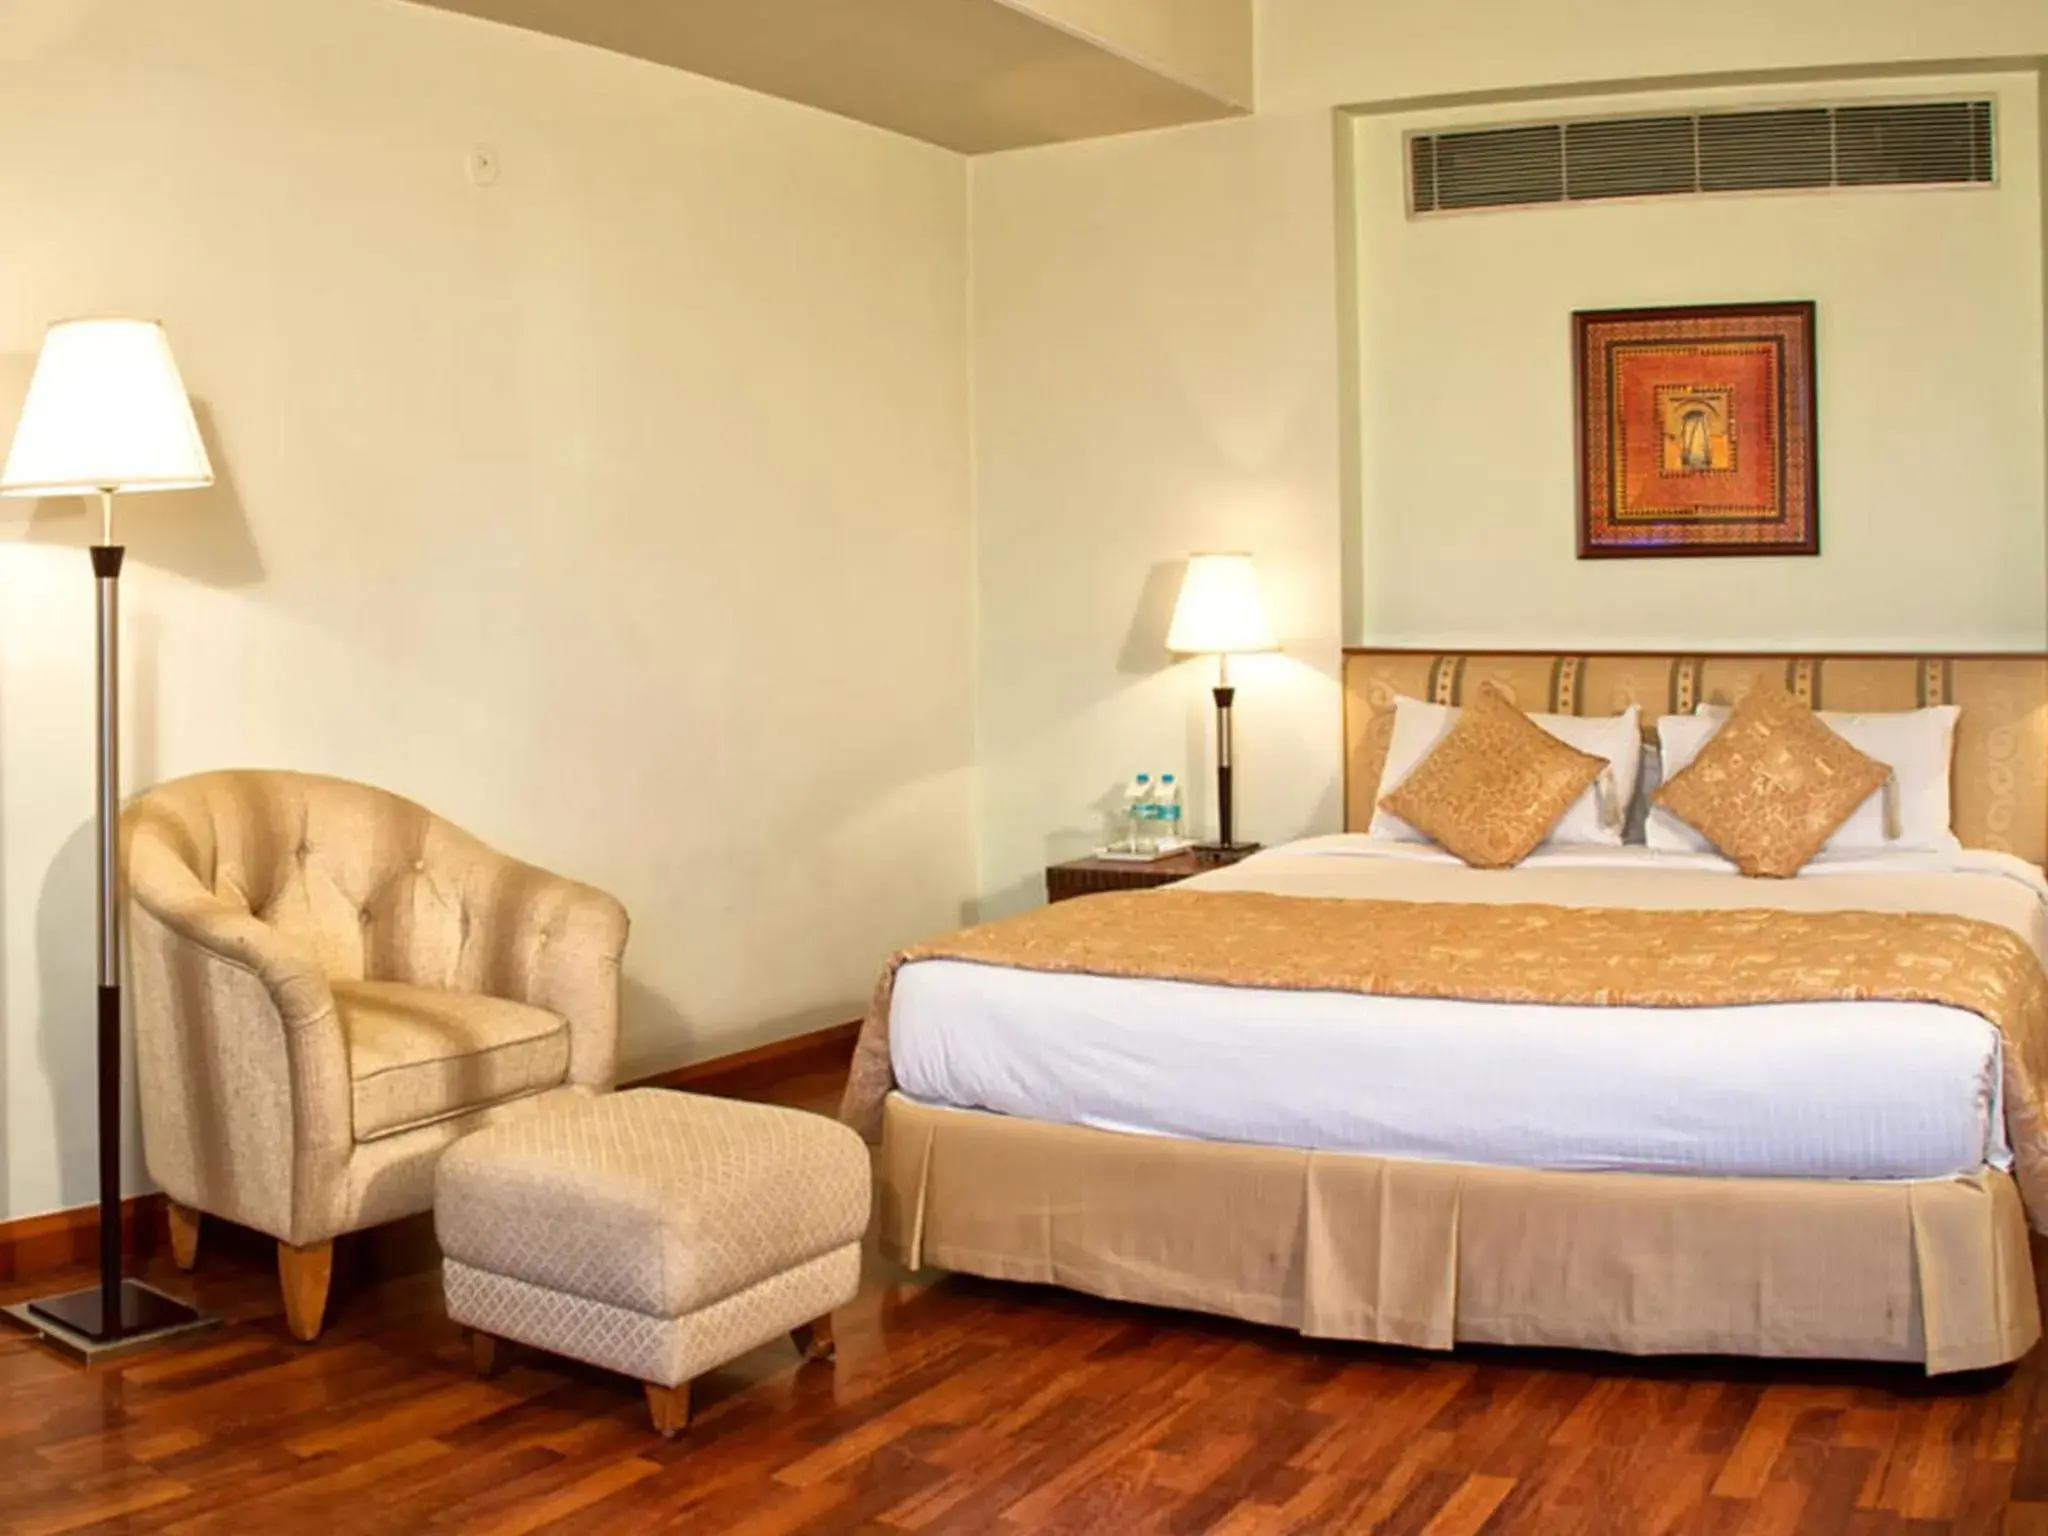 Bed, Room Photo in Clarion Hotel Bella Casa